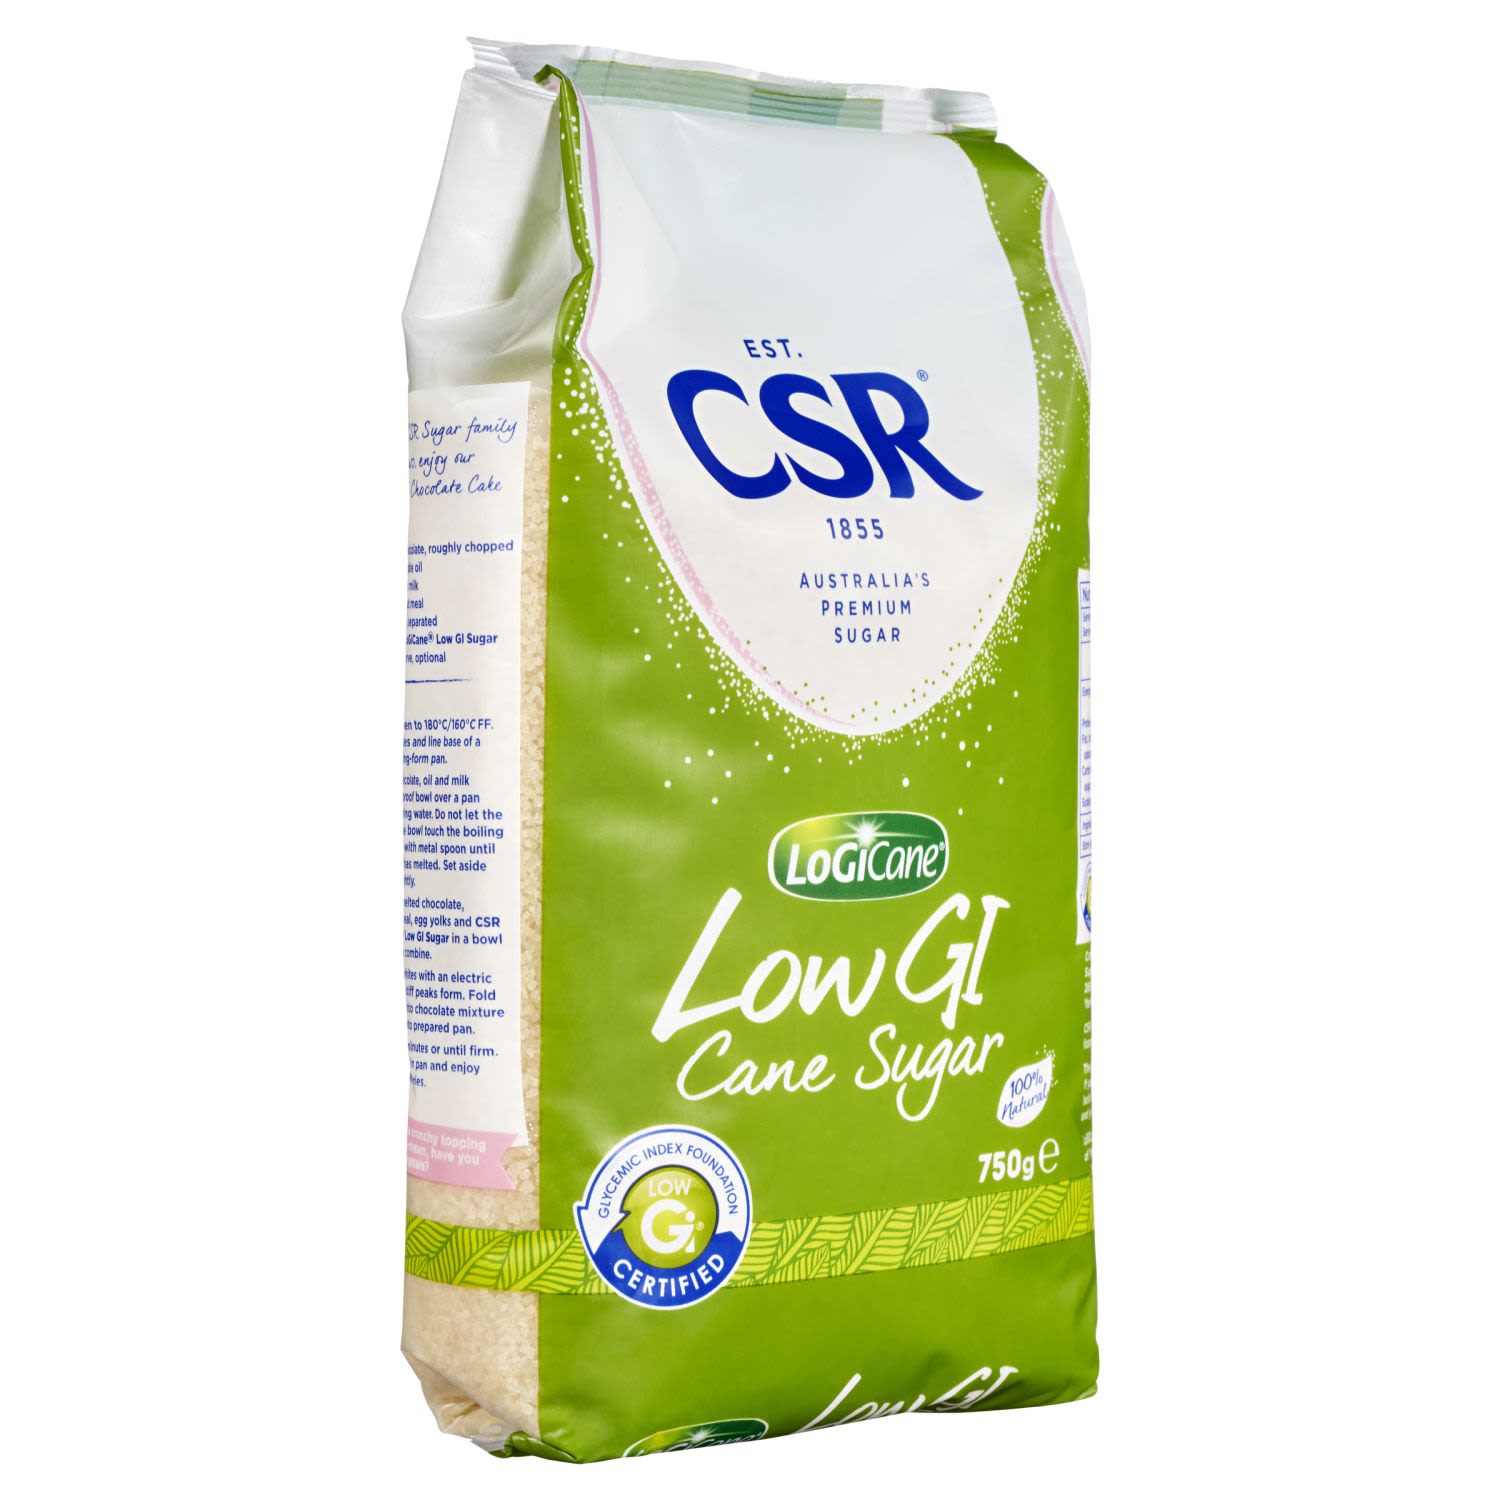 CSR Low GI Cane Sugar, 750 Gram